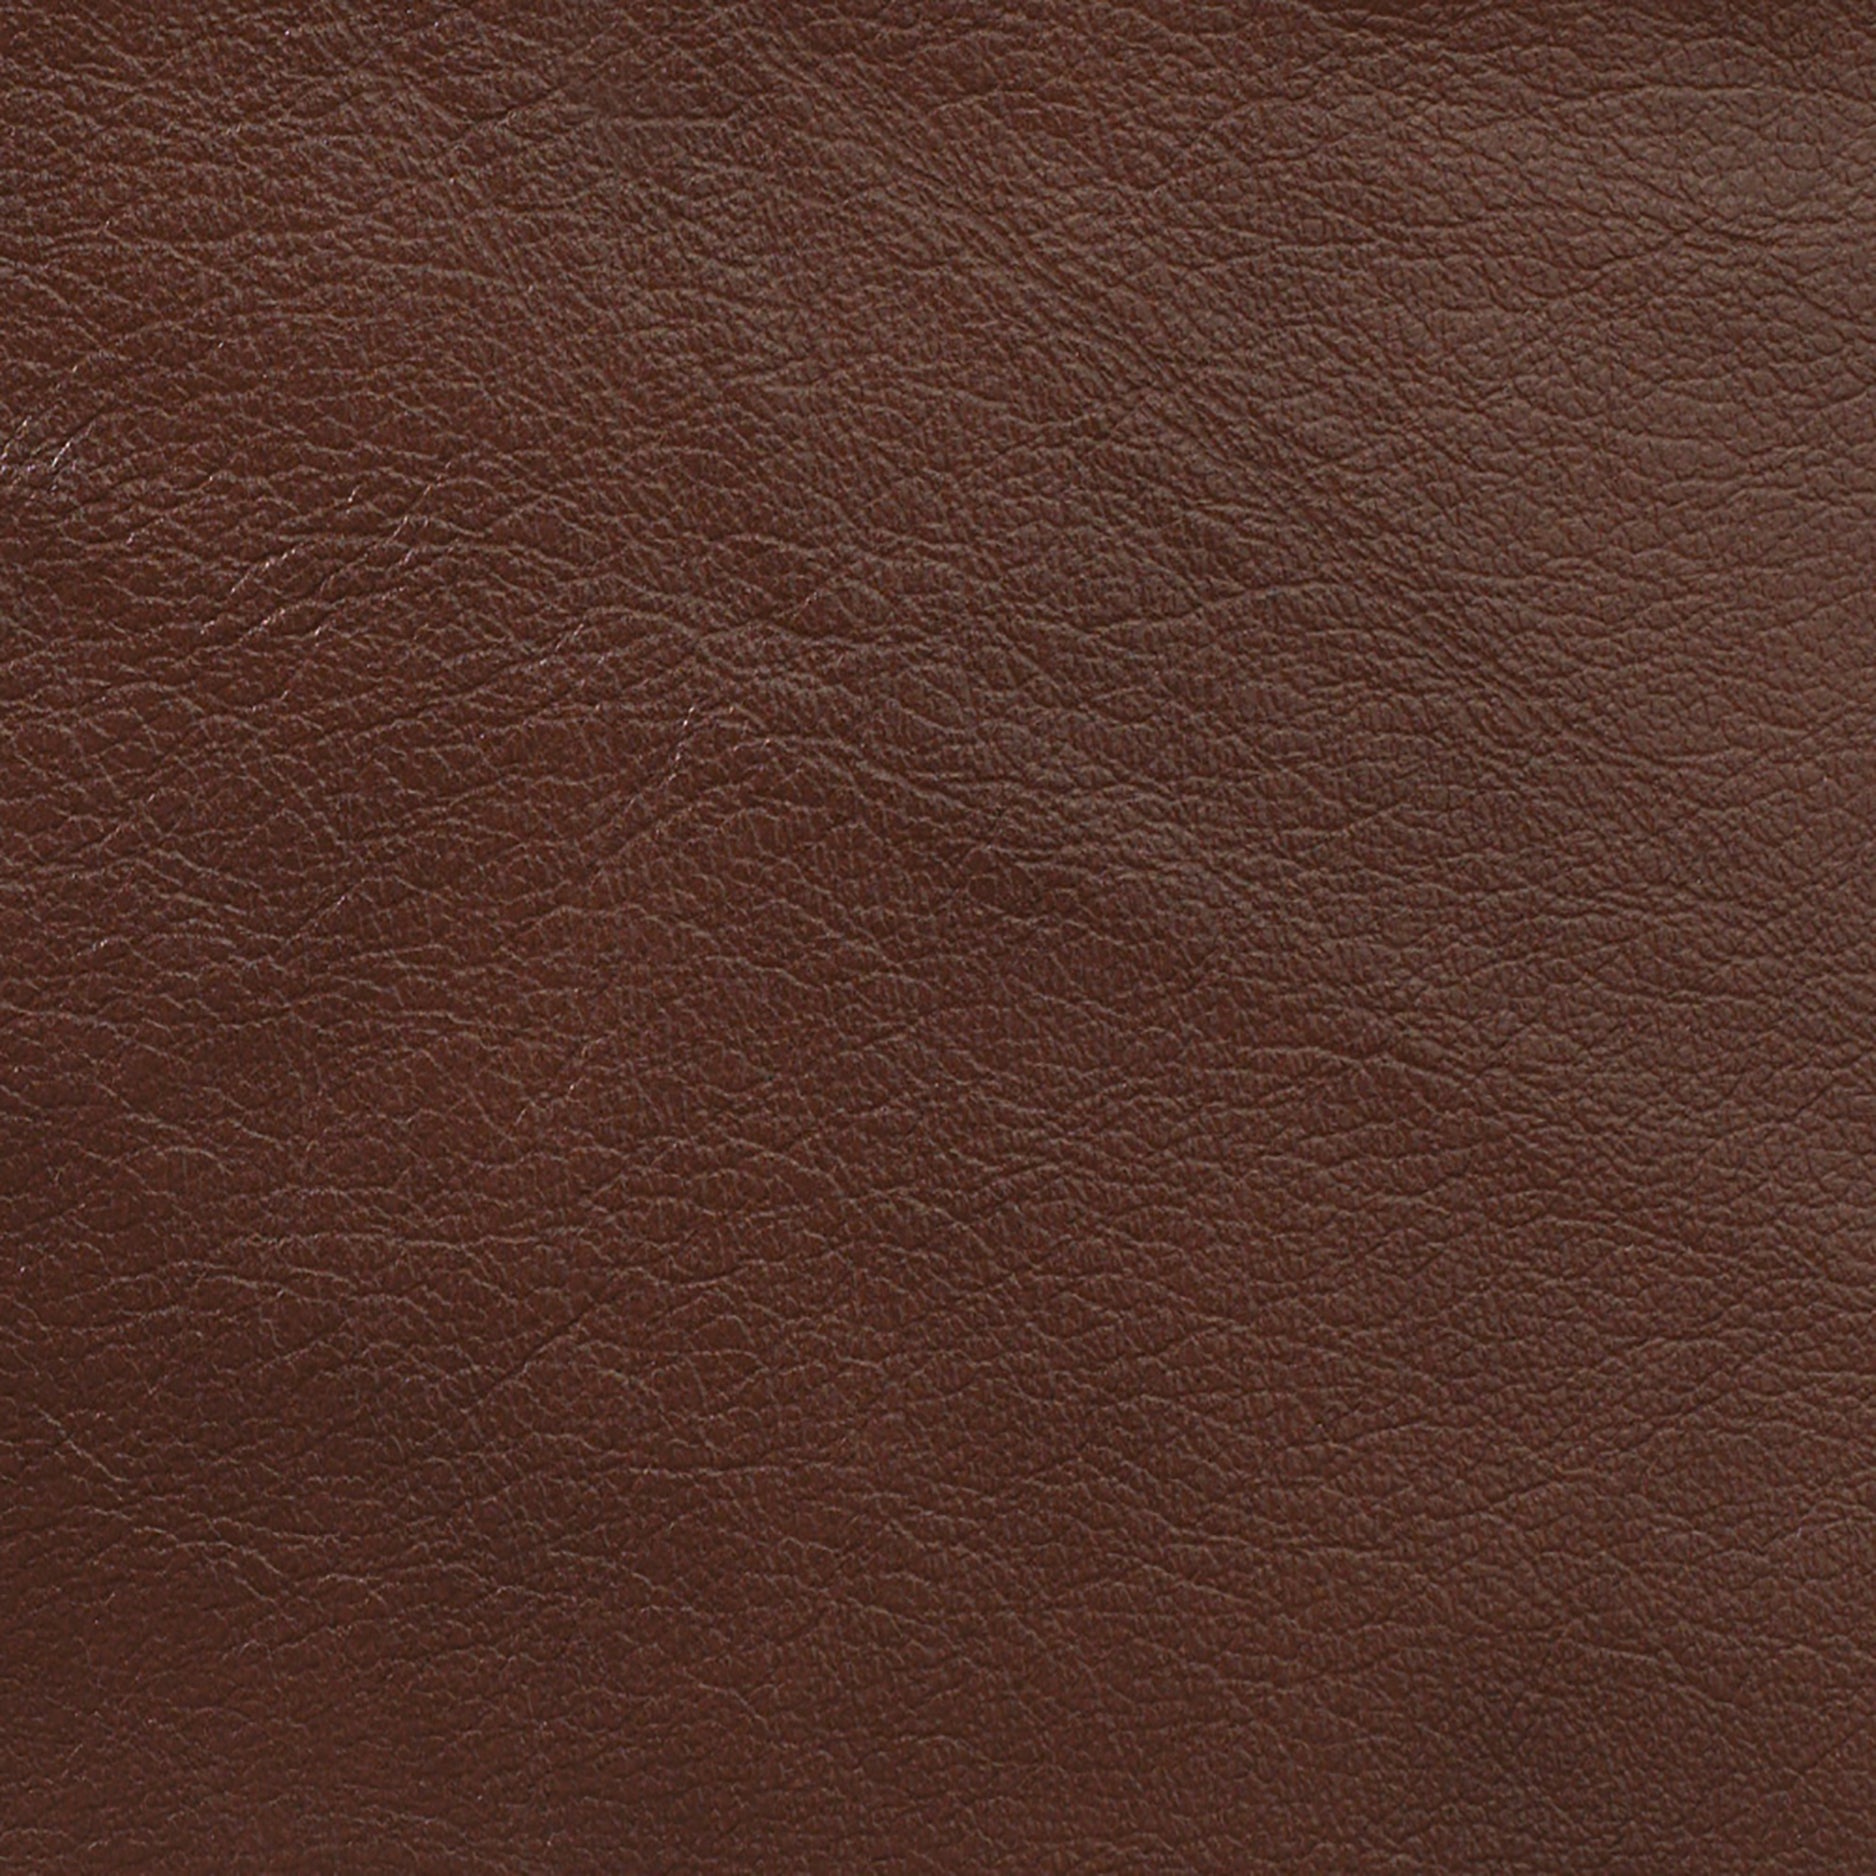 Acaia leather mat – IZZZI